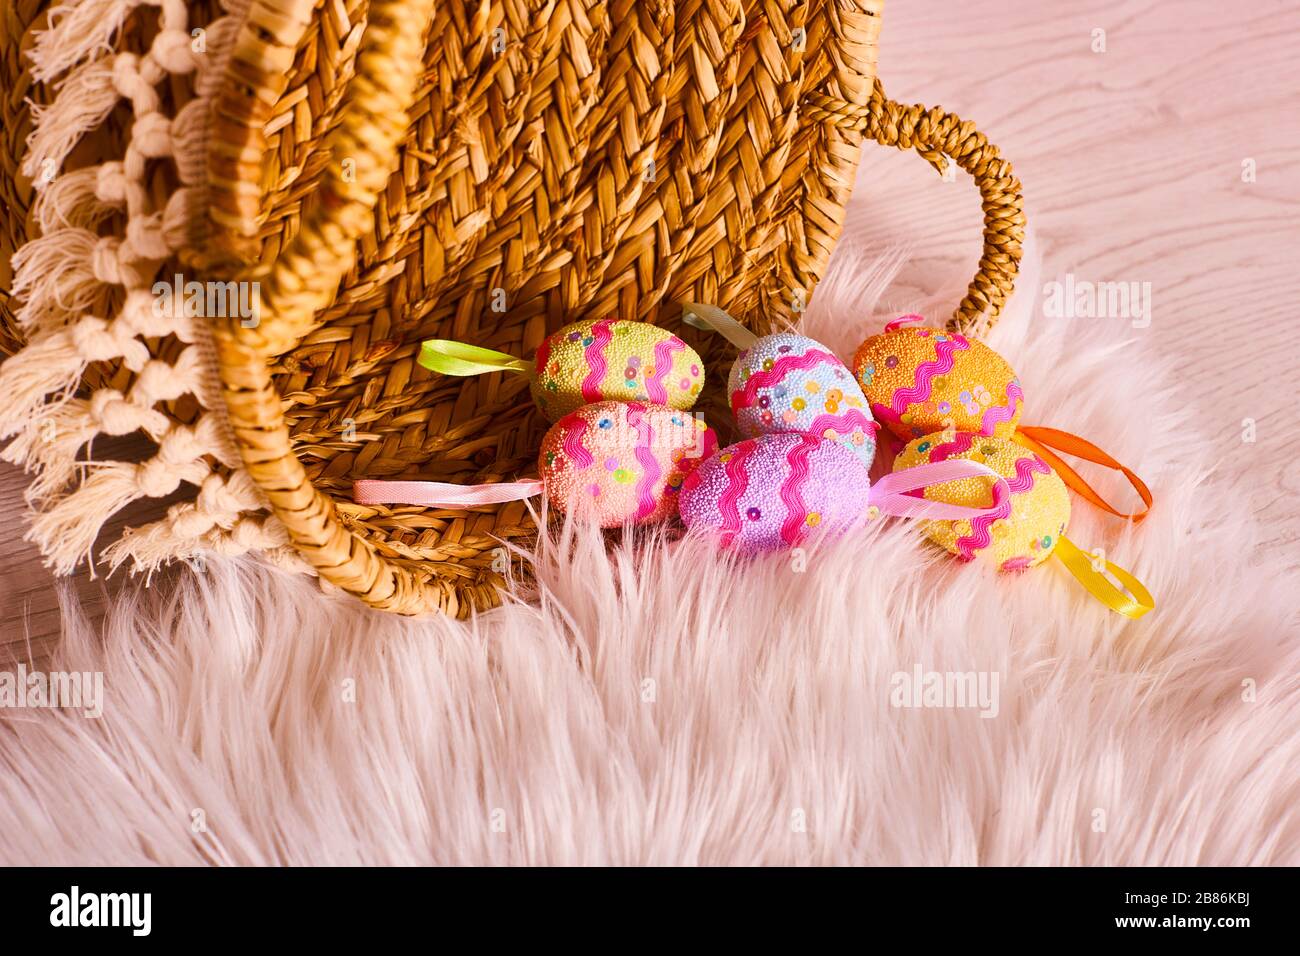 Ostereier mit Spitze, Perlen und Glitzern dekoriert. Einzigartige handbemalte Ostereier im Korb auf dem Boden. Traditionelle Dekoration zu Hause. Stockfoto